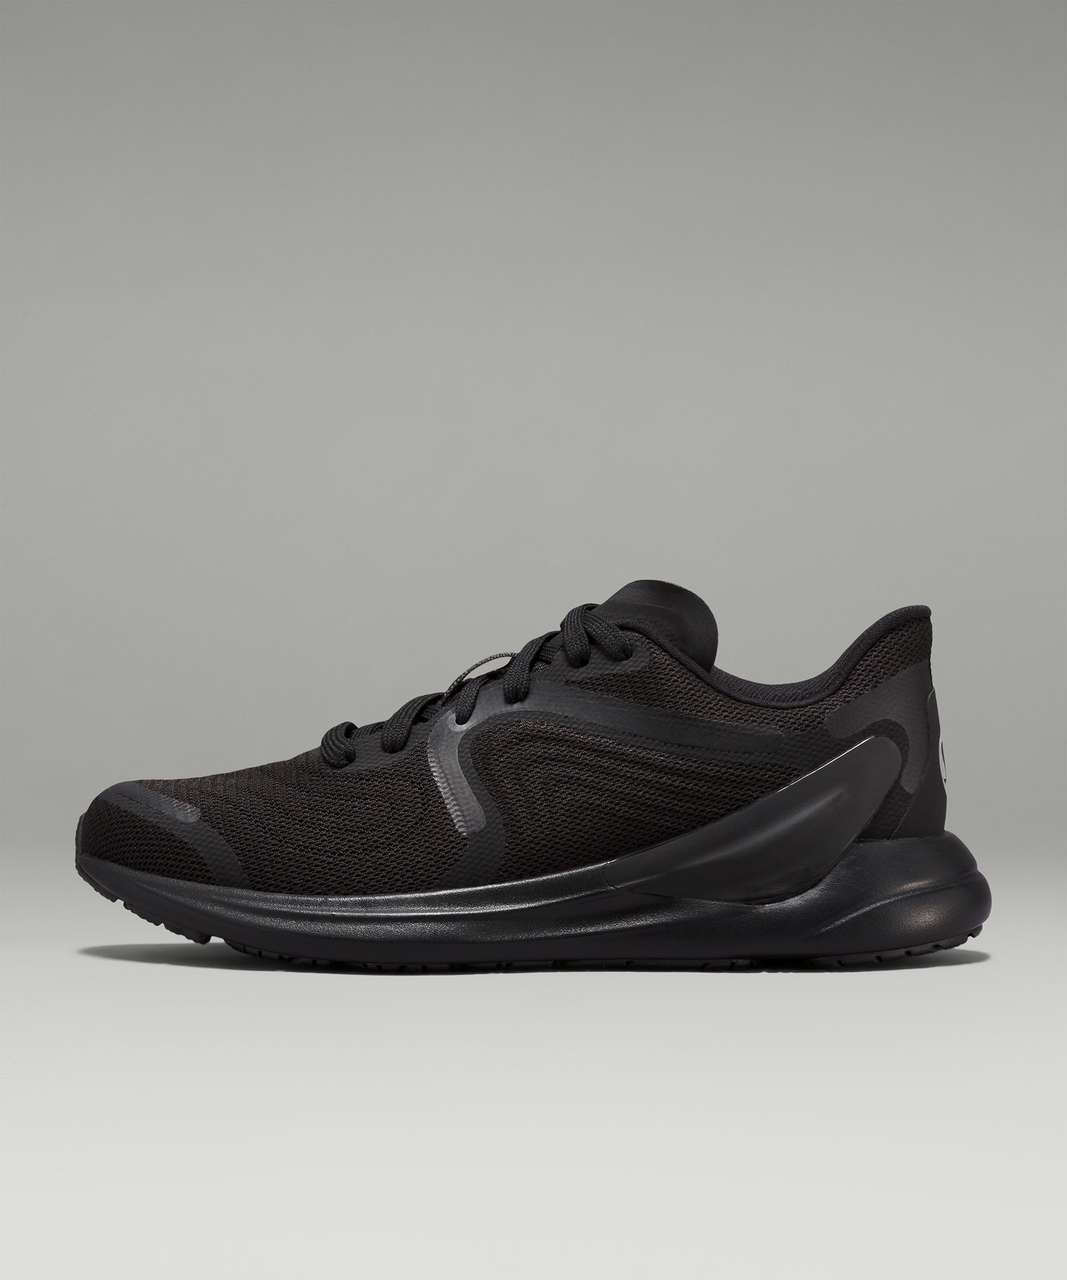 Lululemon Blissfeel 2 Womens Running Shoe - Black / Black / Asphalt Grey